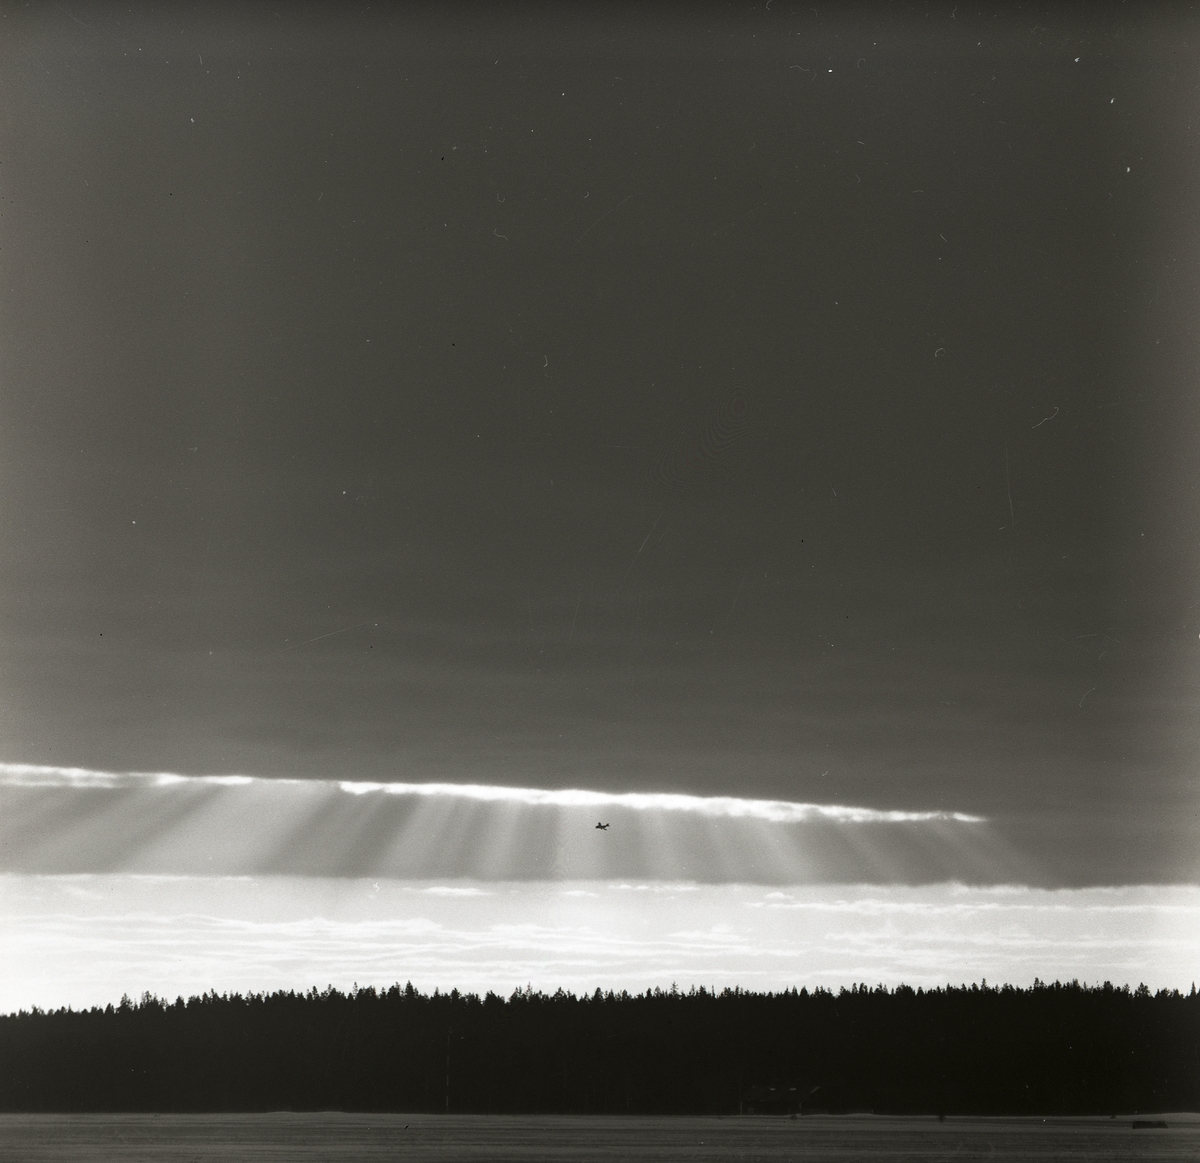 Ett flygplan av modellen J29 Tunnan flyger ovanför skog vid F15 i Söderhamn 1957. Flygplanet befinner sig intill en öppning i molntäcket där solen lyser igenom.